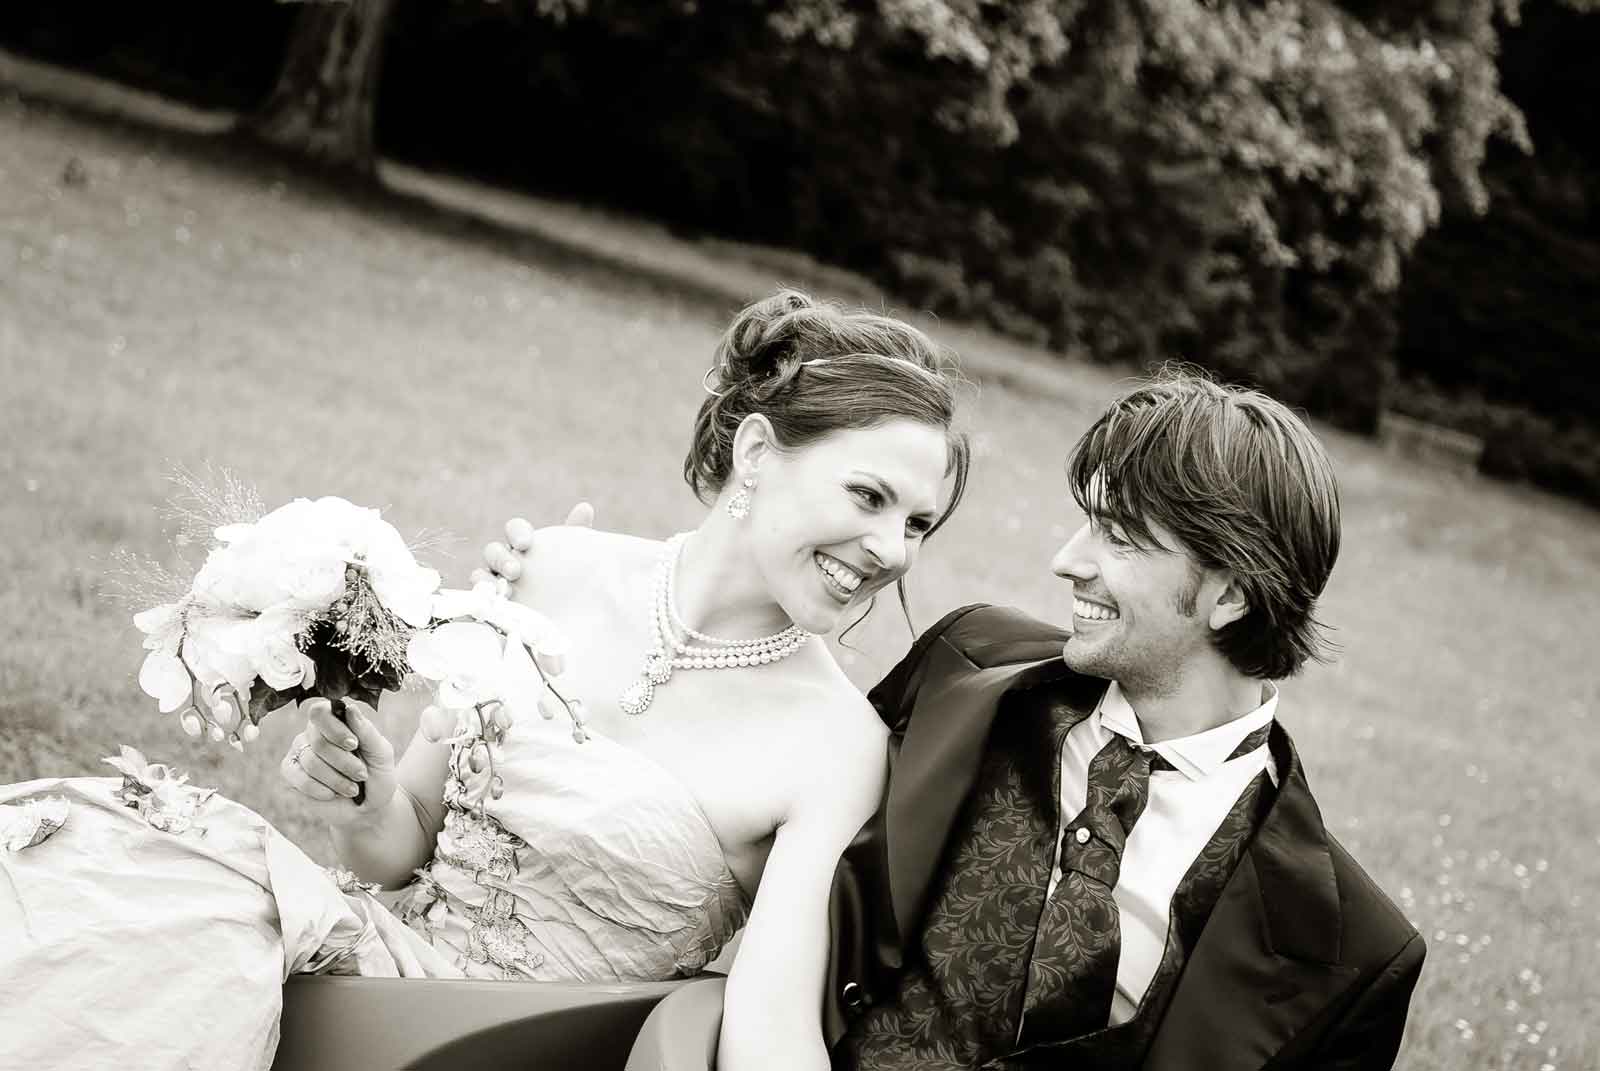 Huwelijk in de tuin van Kasteel Vaeshartelt te Maastricht. Bruidspaar zit op stoeltjes en kijkt lachend naar elkaar